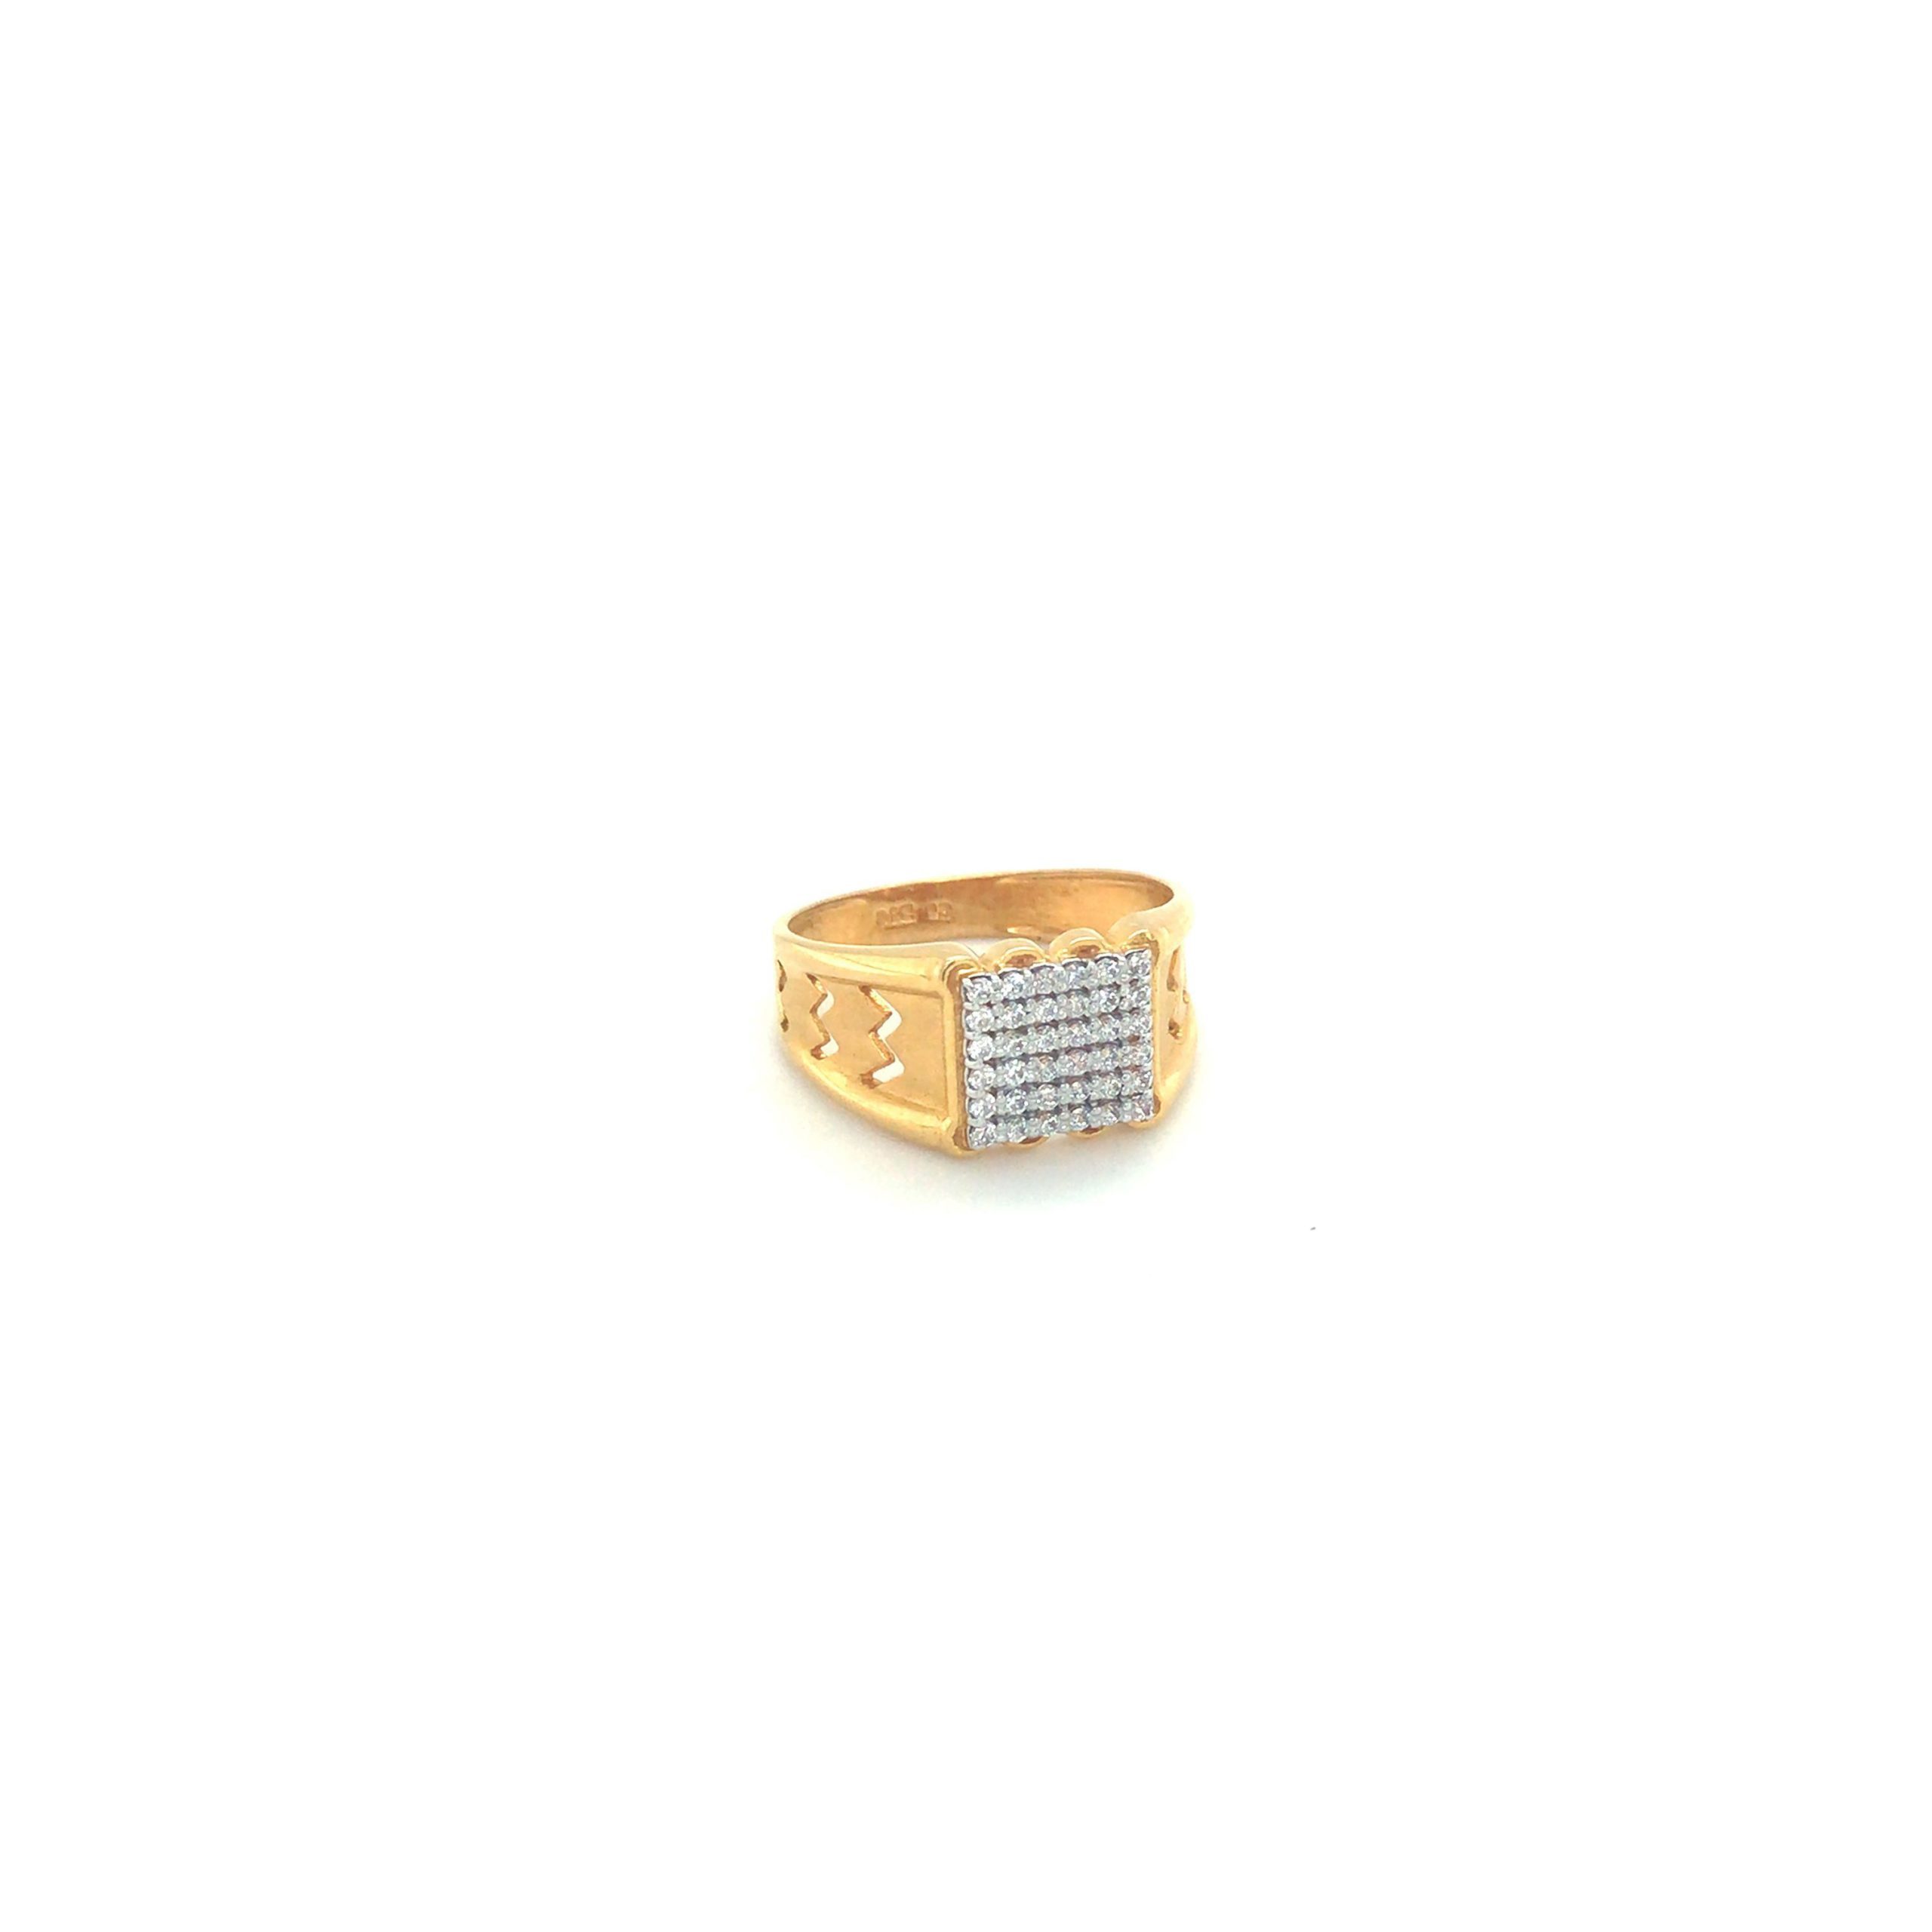 22K Gold Ring For Men - 235-GR8246 in 3.450 Grams